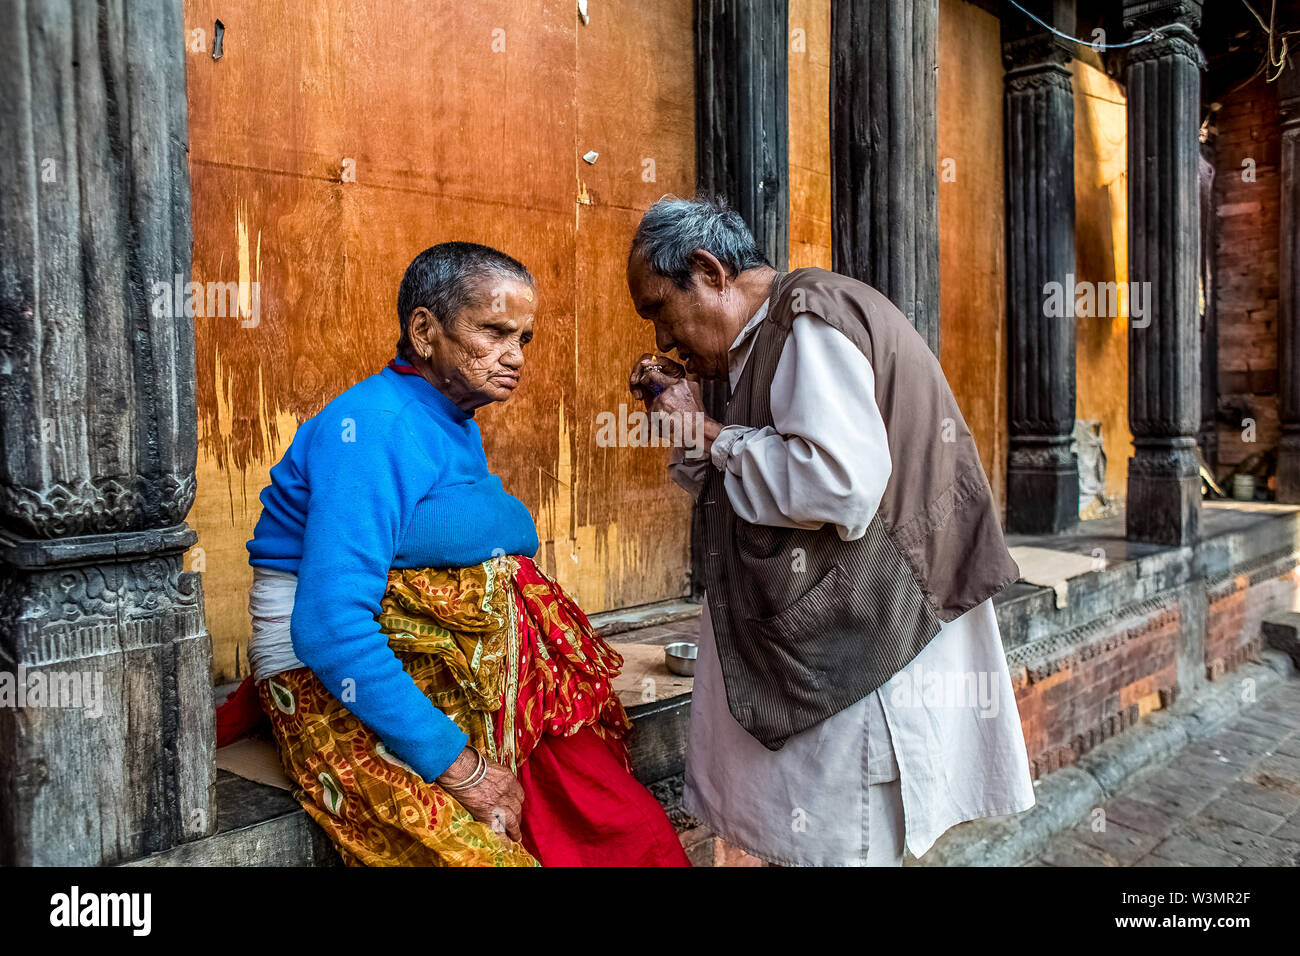 Leben nach dem Erdbeben. Älterer Mann und Frau an einem alten Menschen zu Hause, in Panchadeval, Pashupatinath, Kathmandu. Ein Erdbeben der Stärke 7.8 struck Nepal bei 11:56 morgens, am 25. April 2015, töteten mindestens 7000 Menschen. Kathmandu, Nepal. Mai 2, 2015. Stockfoto